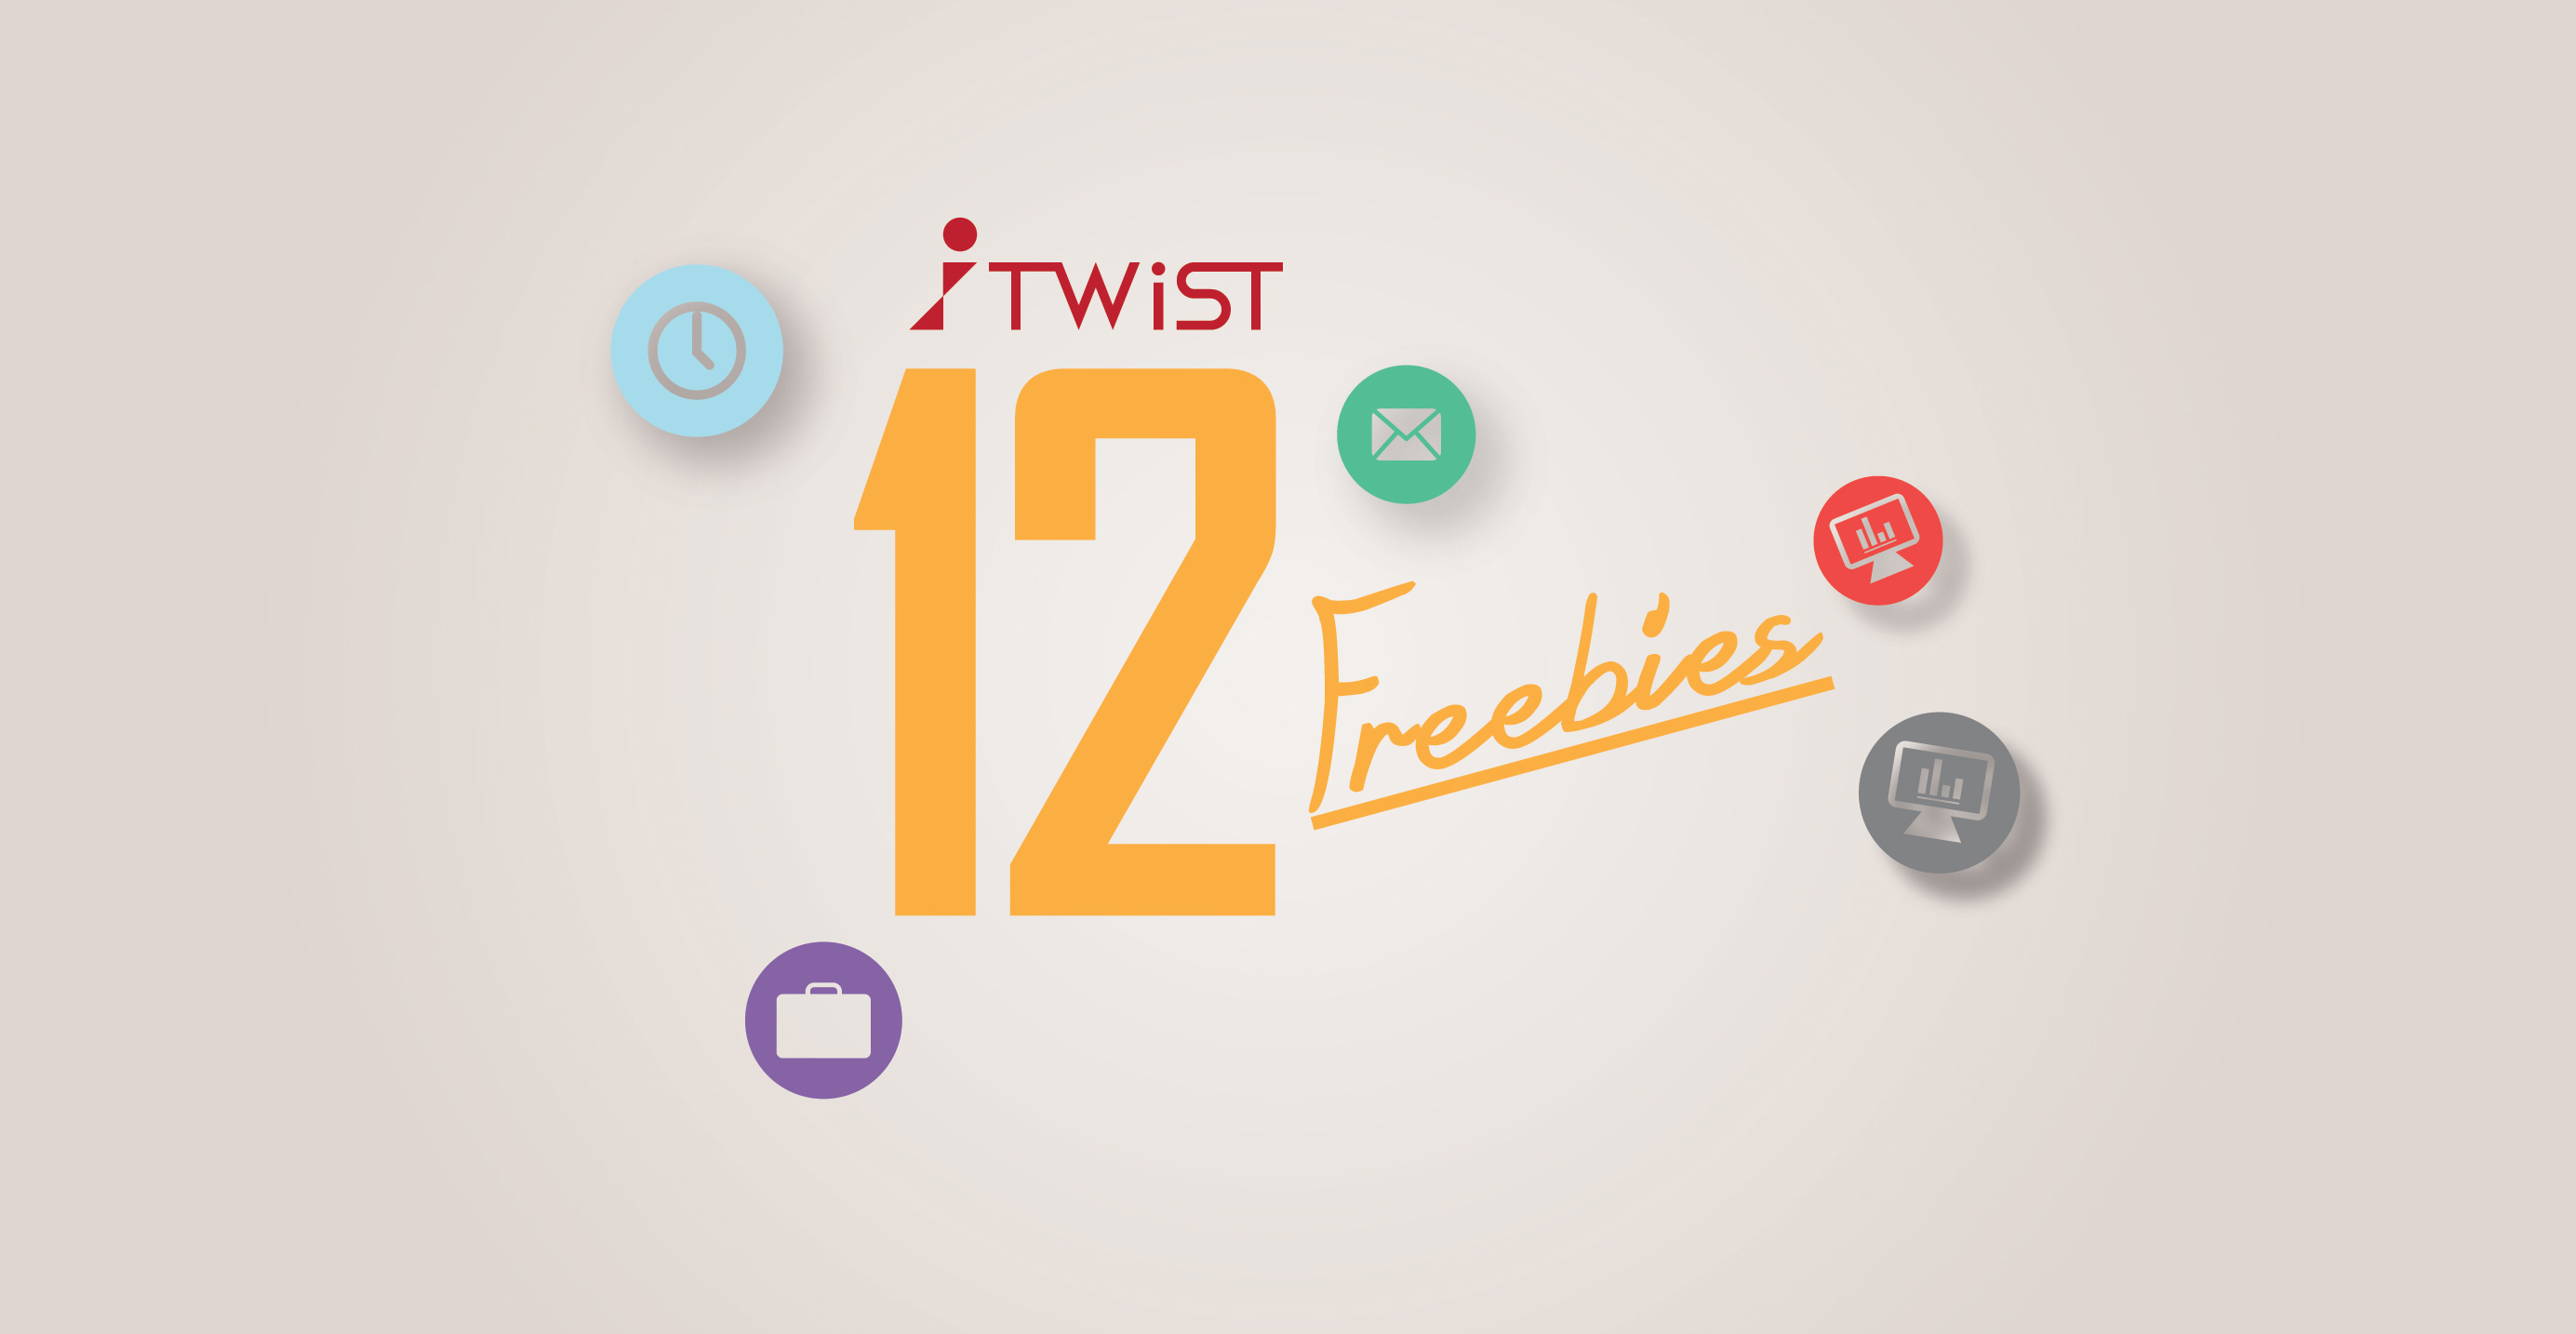 12 ความสามารถที่มีให้ฟรีอยู่แล้วในทุก user ใช้งาน iTwist SMS